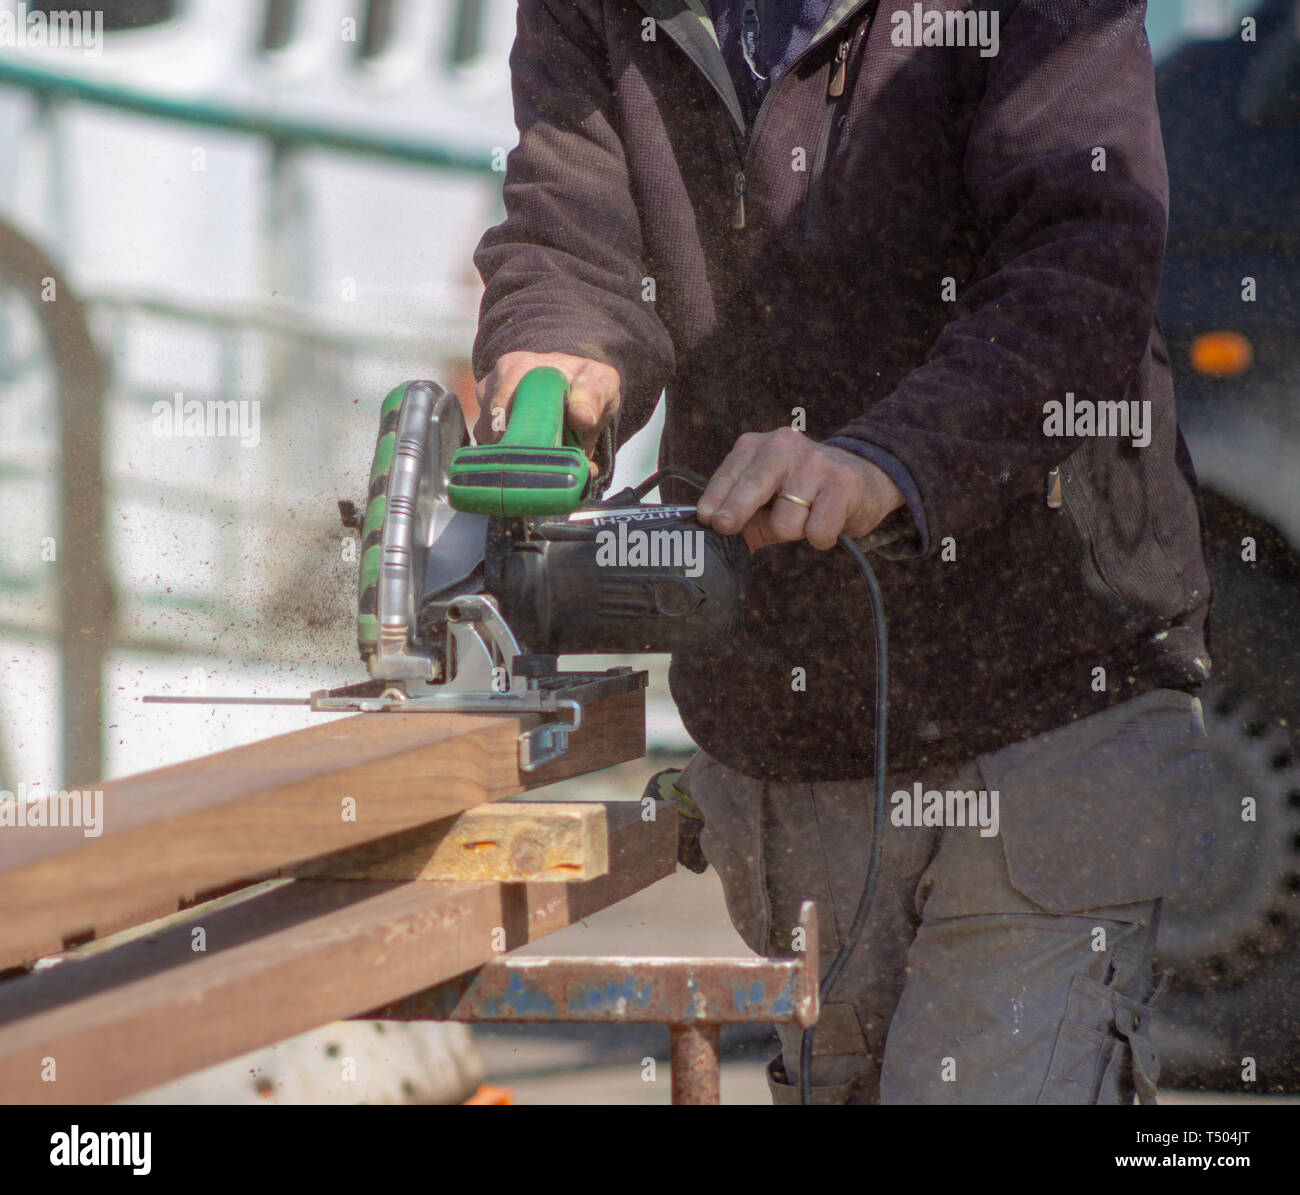 Menuisier charpentier de couper une planche de bois de teck avec une scie circulaire électrique Hitachi Banque D'Images